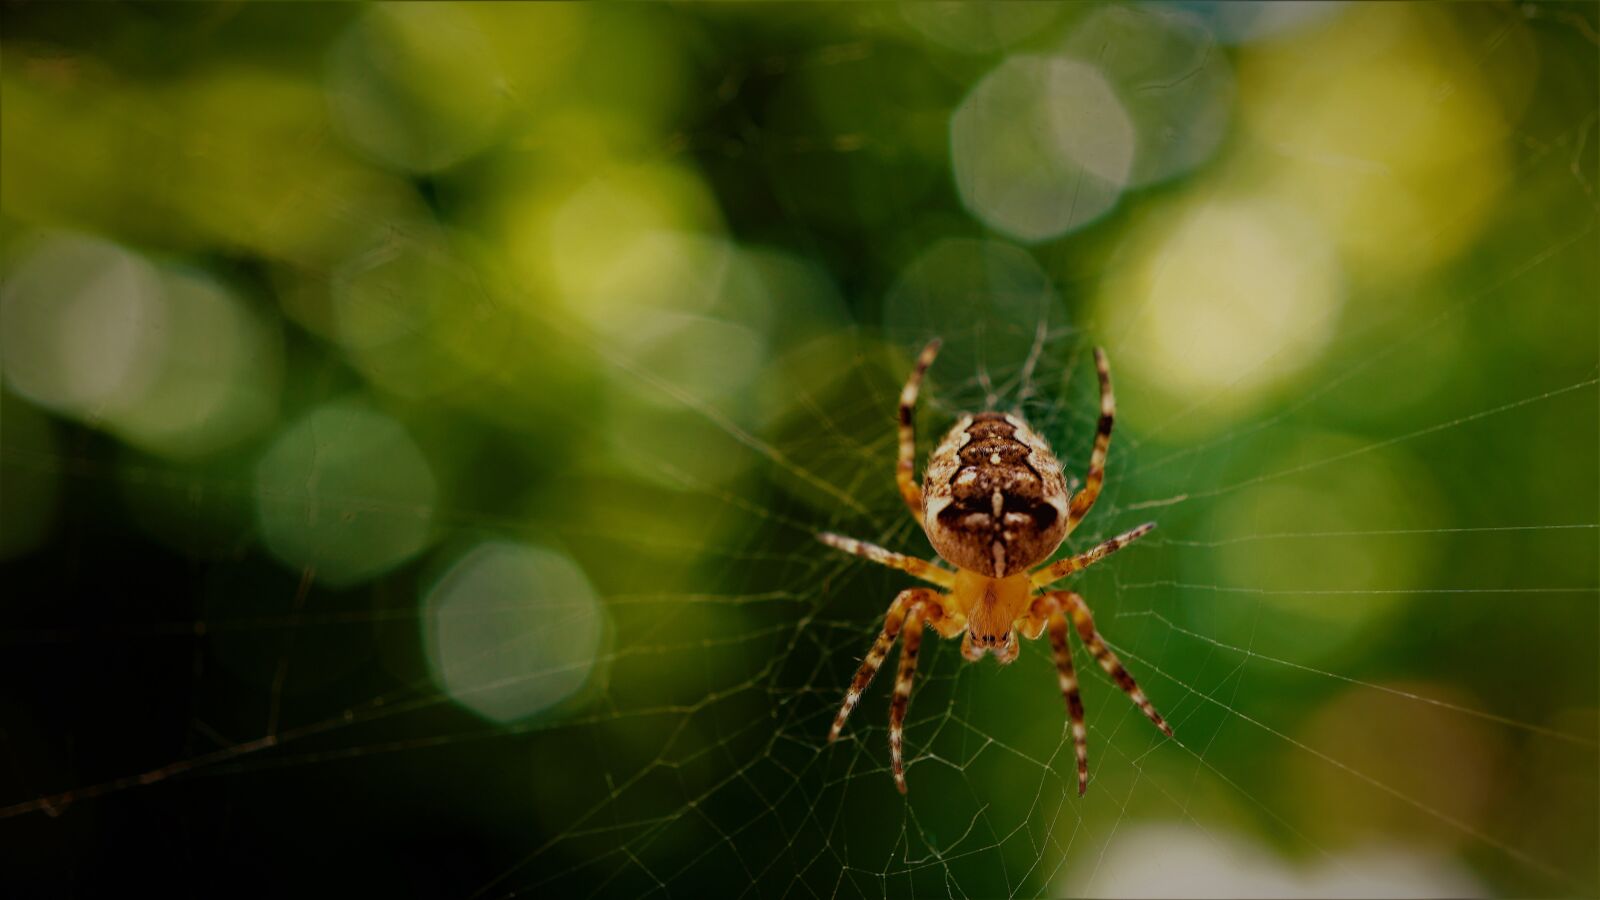 Sony E 30mm F3.5 Macro sample photo. Araneus, spider, cobweb photography